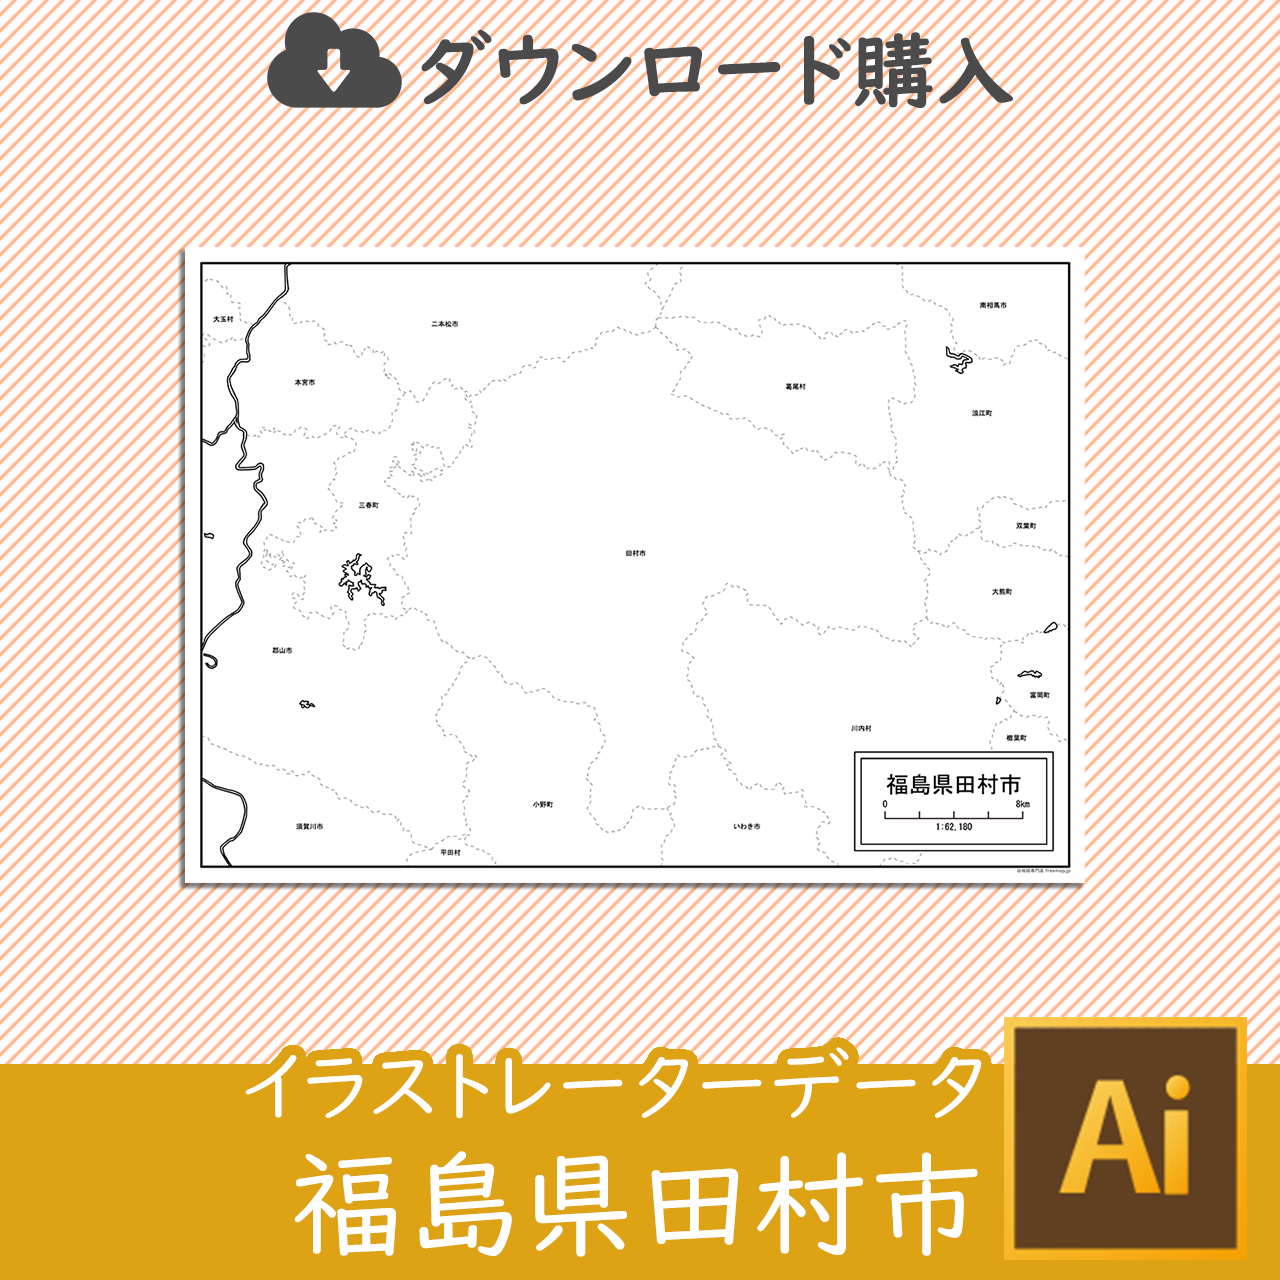 田村市のaiデータのサムネイル画像